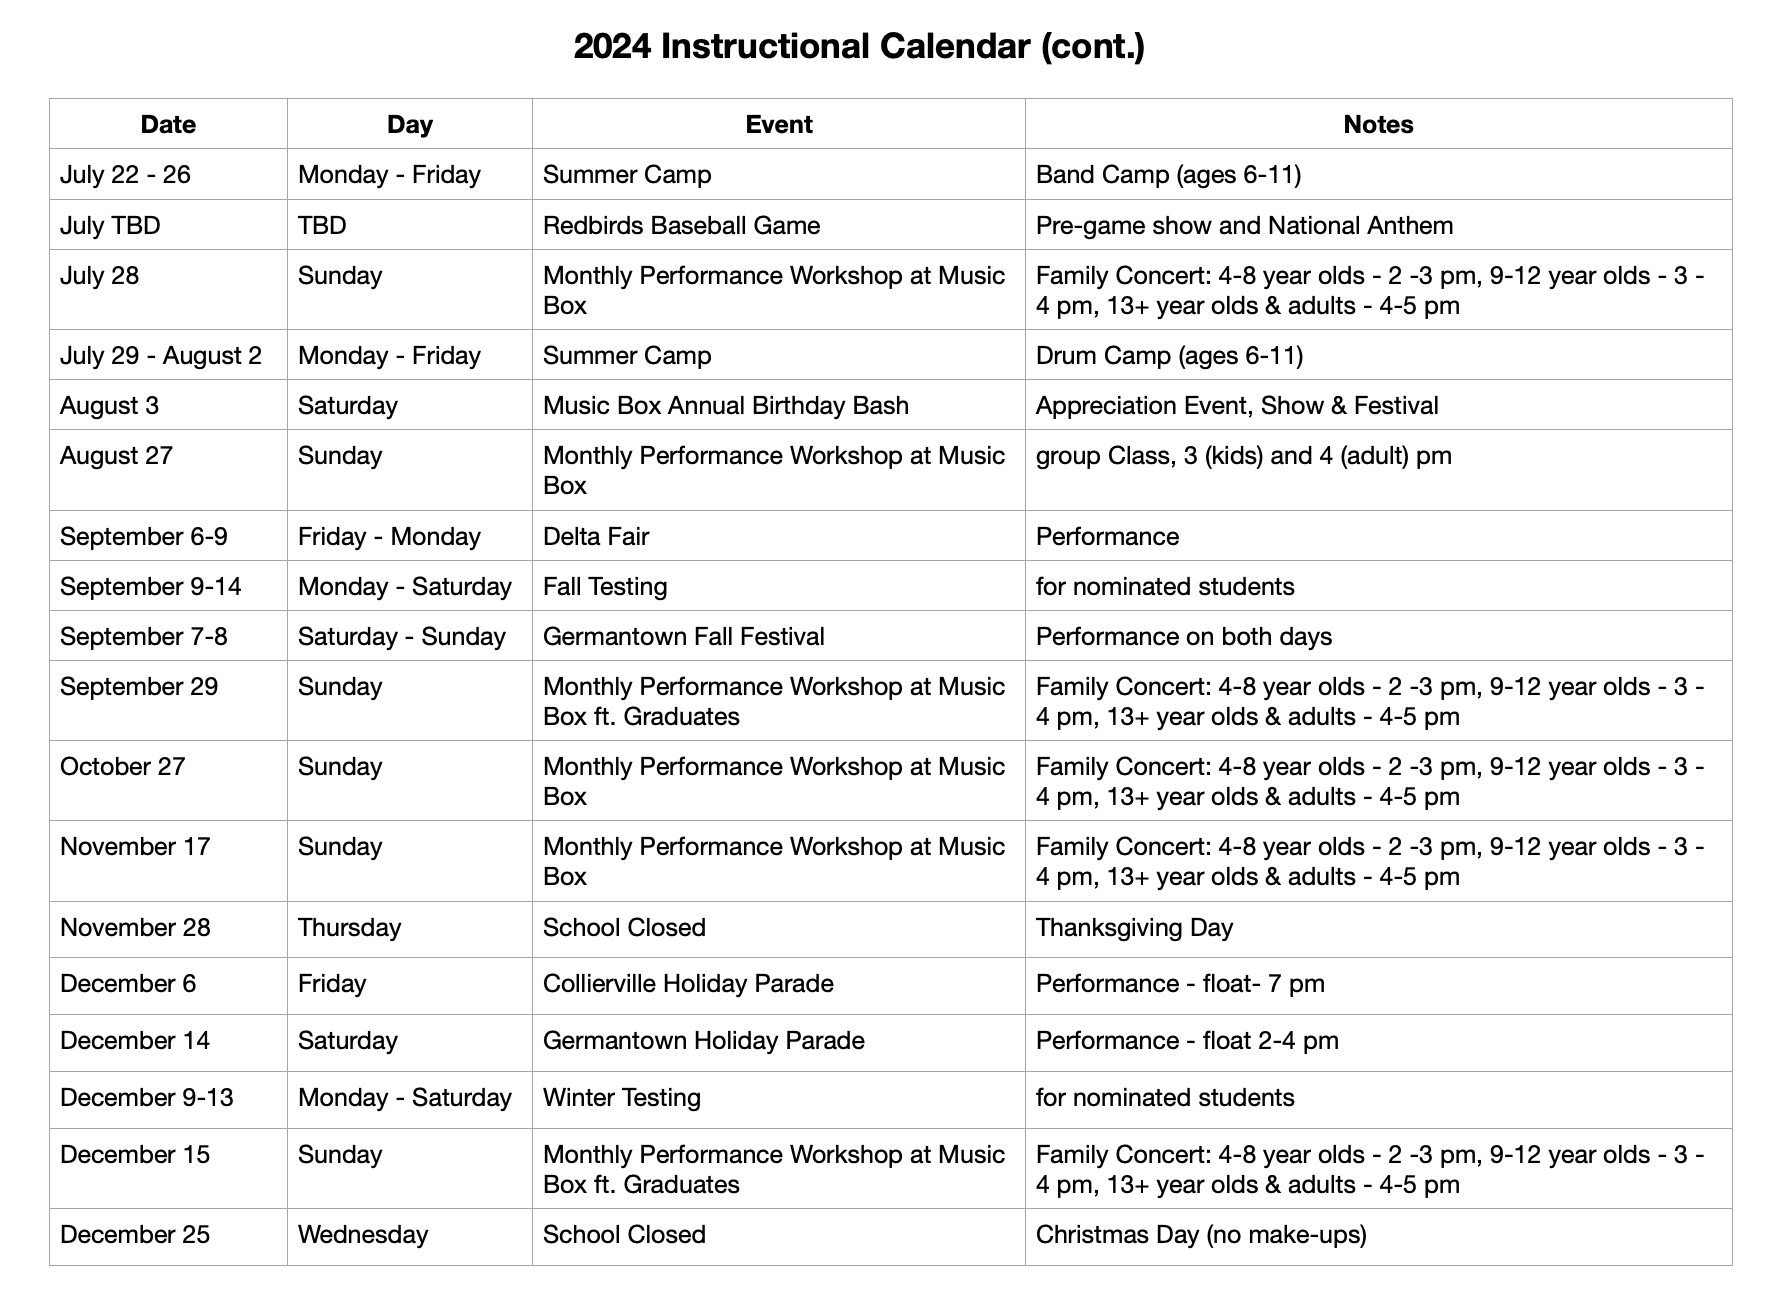 2022 Instructional Calendar - Music Box